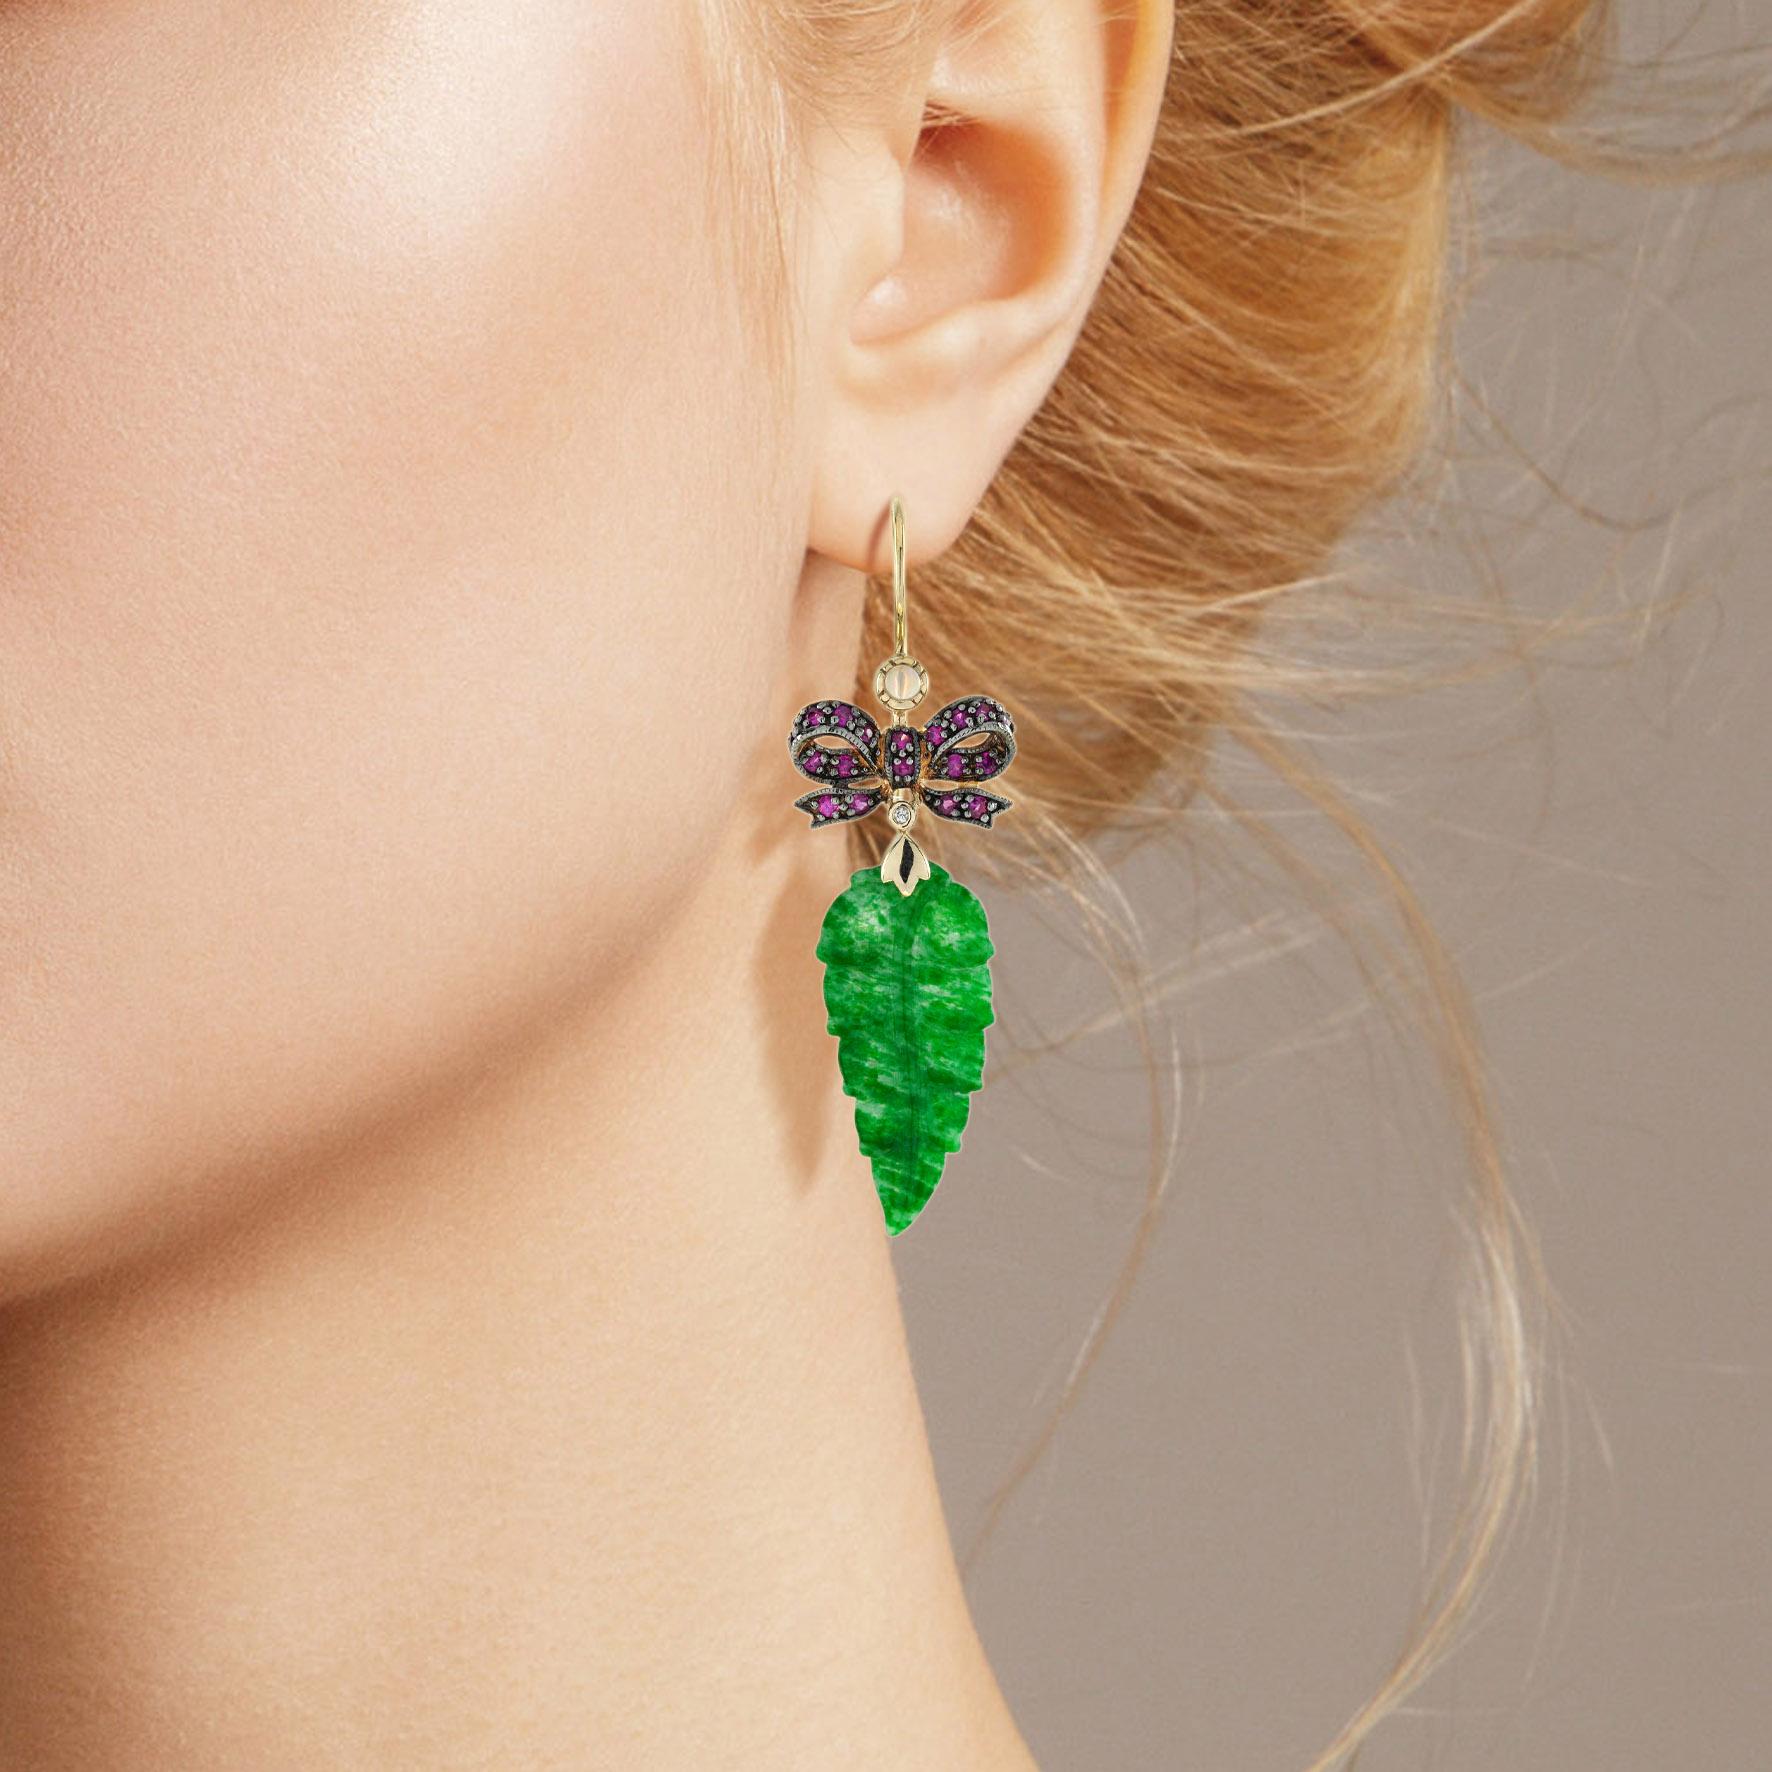 Die natürliche Jade in diesen schönen Ohrringen hat eine ganz besondere Form. Beide Stücke haben eine kräftige grüne Farbe und gute Blattschnitzereien. Die Jade hängt in einer Fassung aus 9-karätigem Gelbgold mit einer Rubinschleife auf der